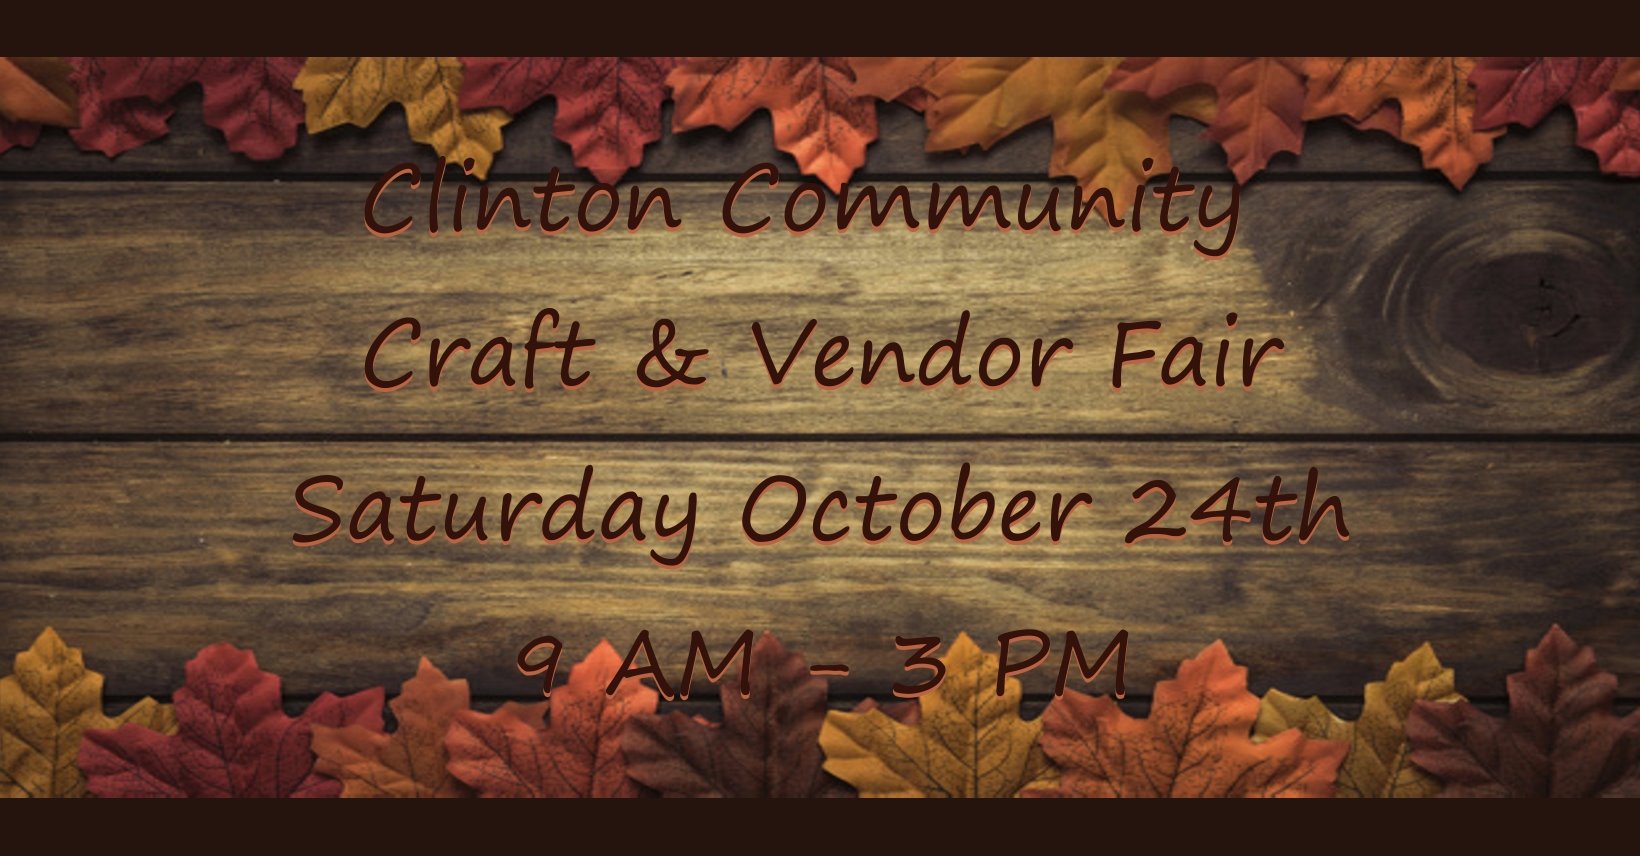 Clinton Community Craft & Vendor Fair